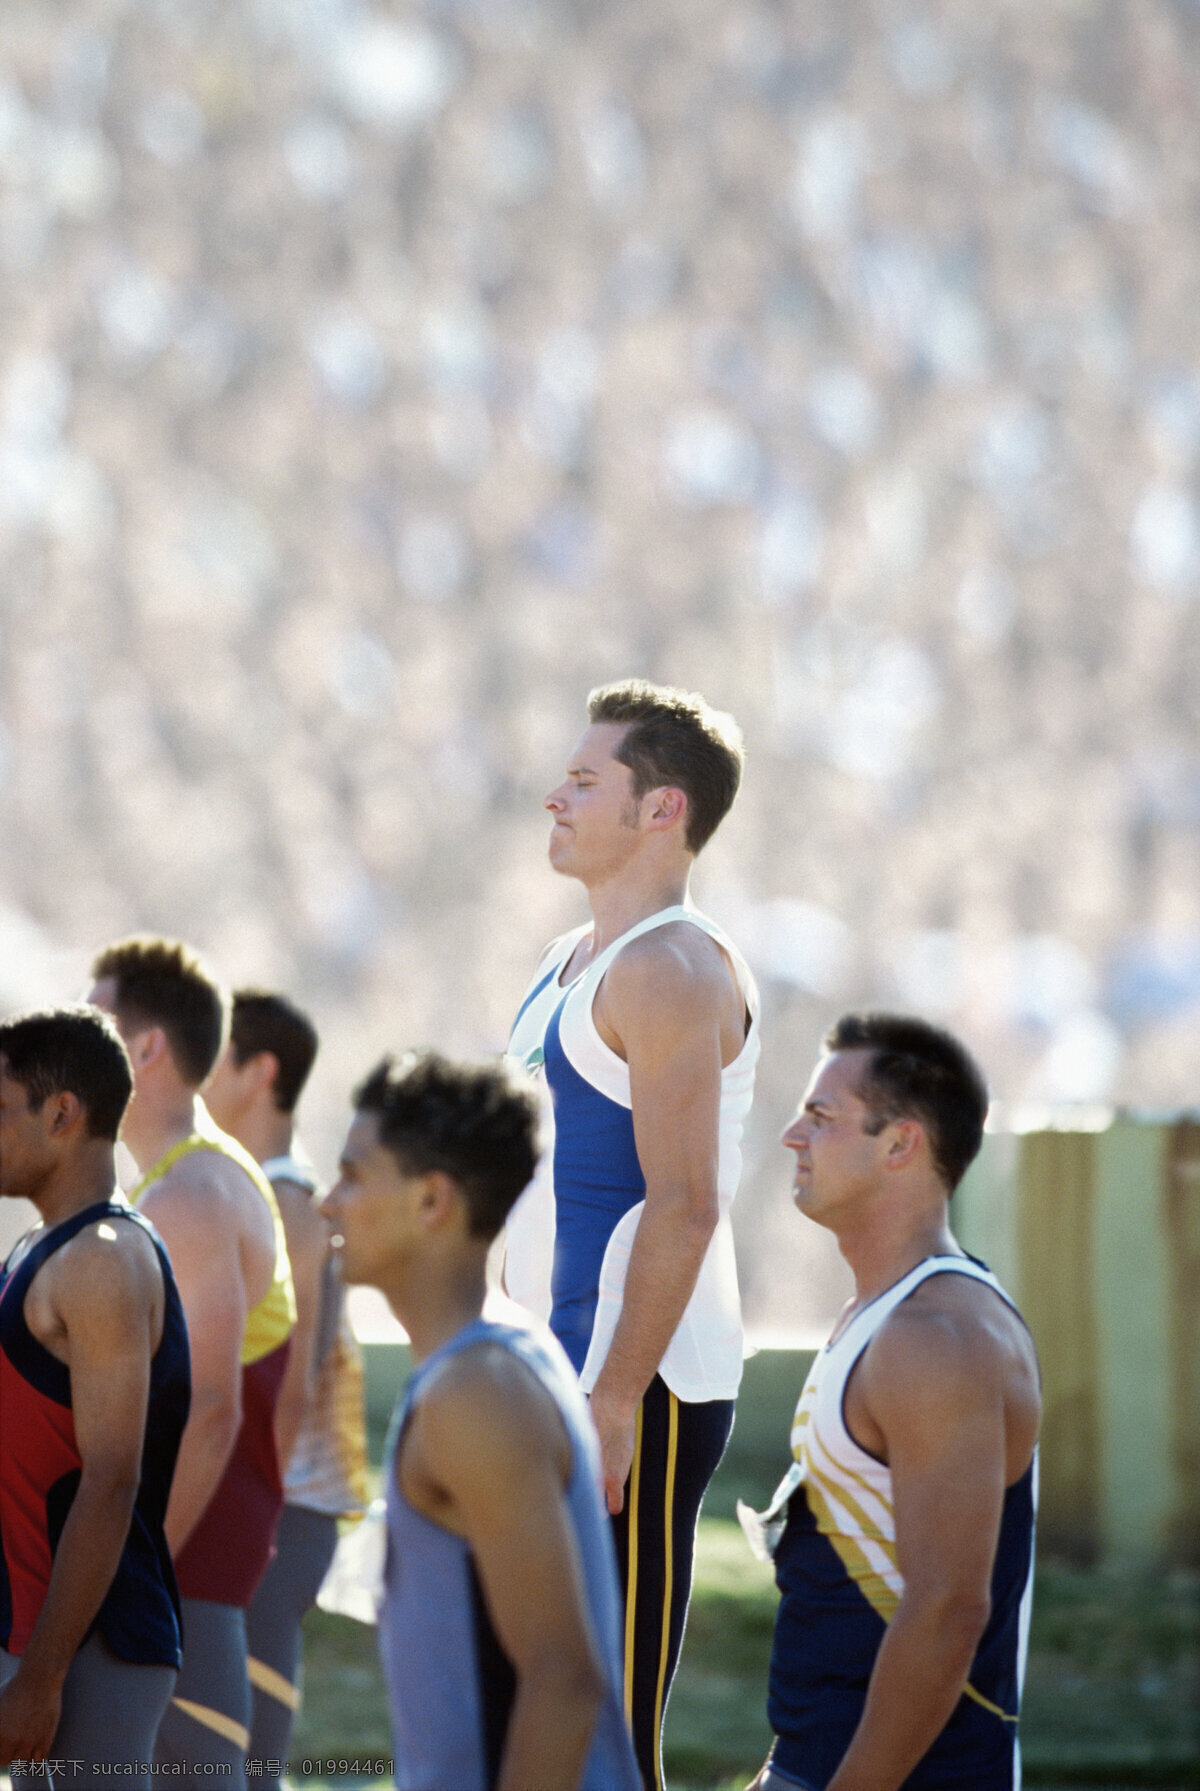 男子运动员 体育运动 体育项目 奥运会 奥林匹克 运动员 奥运项目 男子短跑 比赛 生活百科 灰色